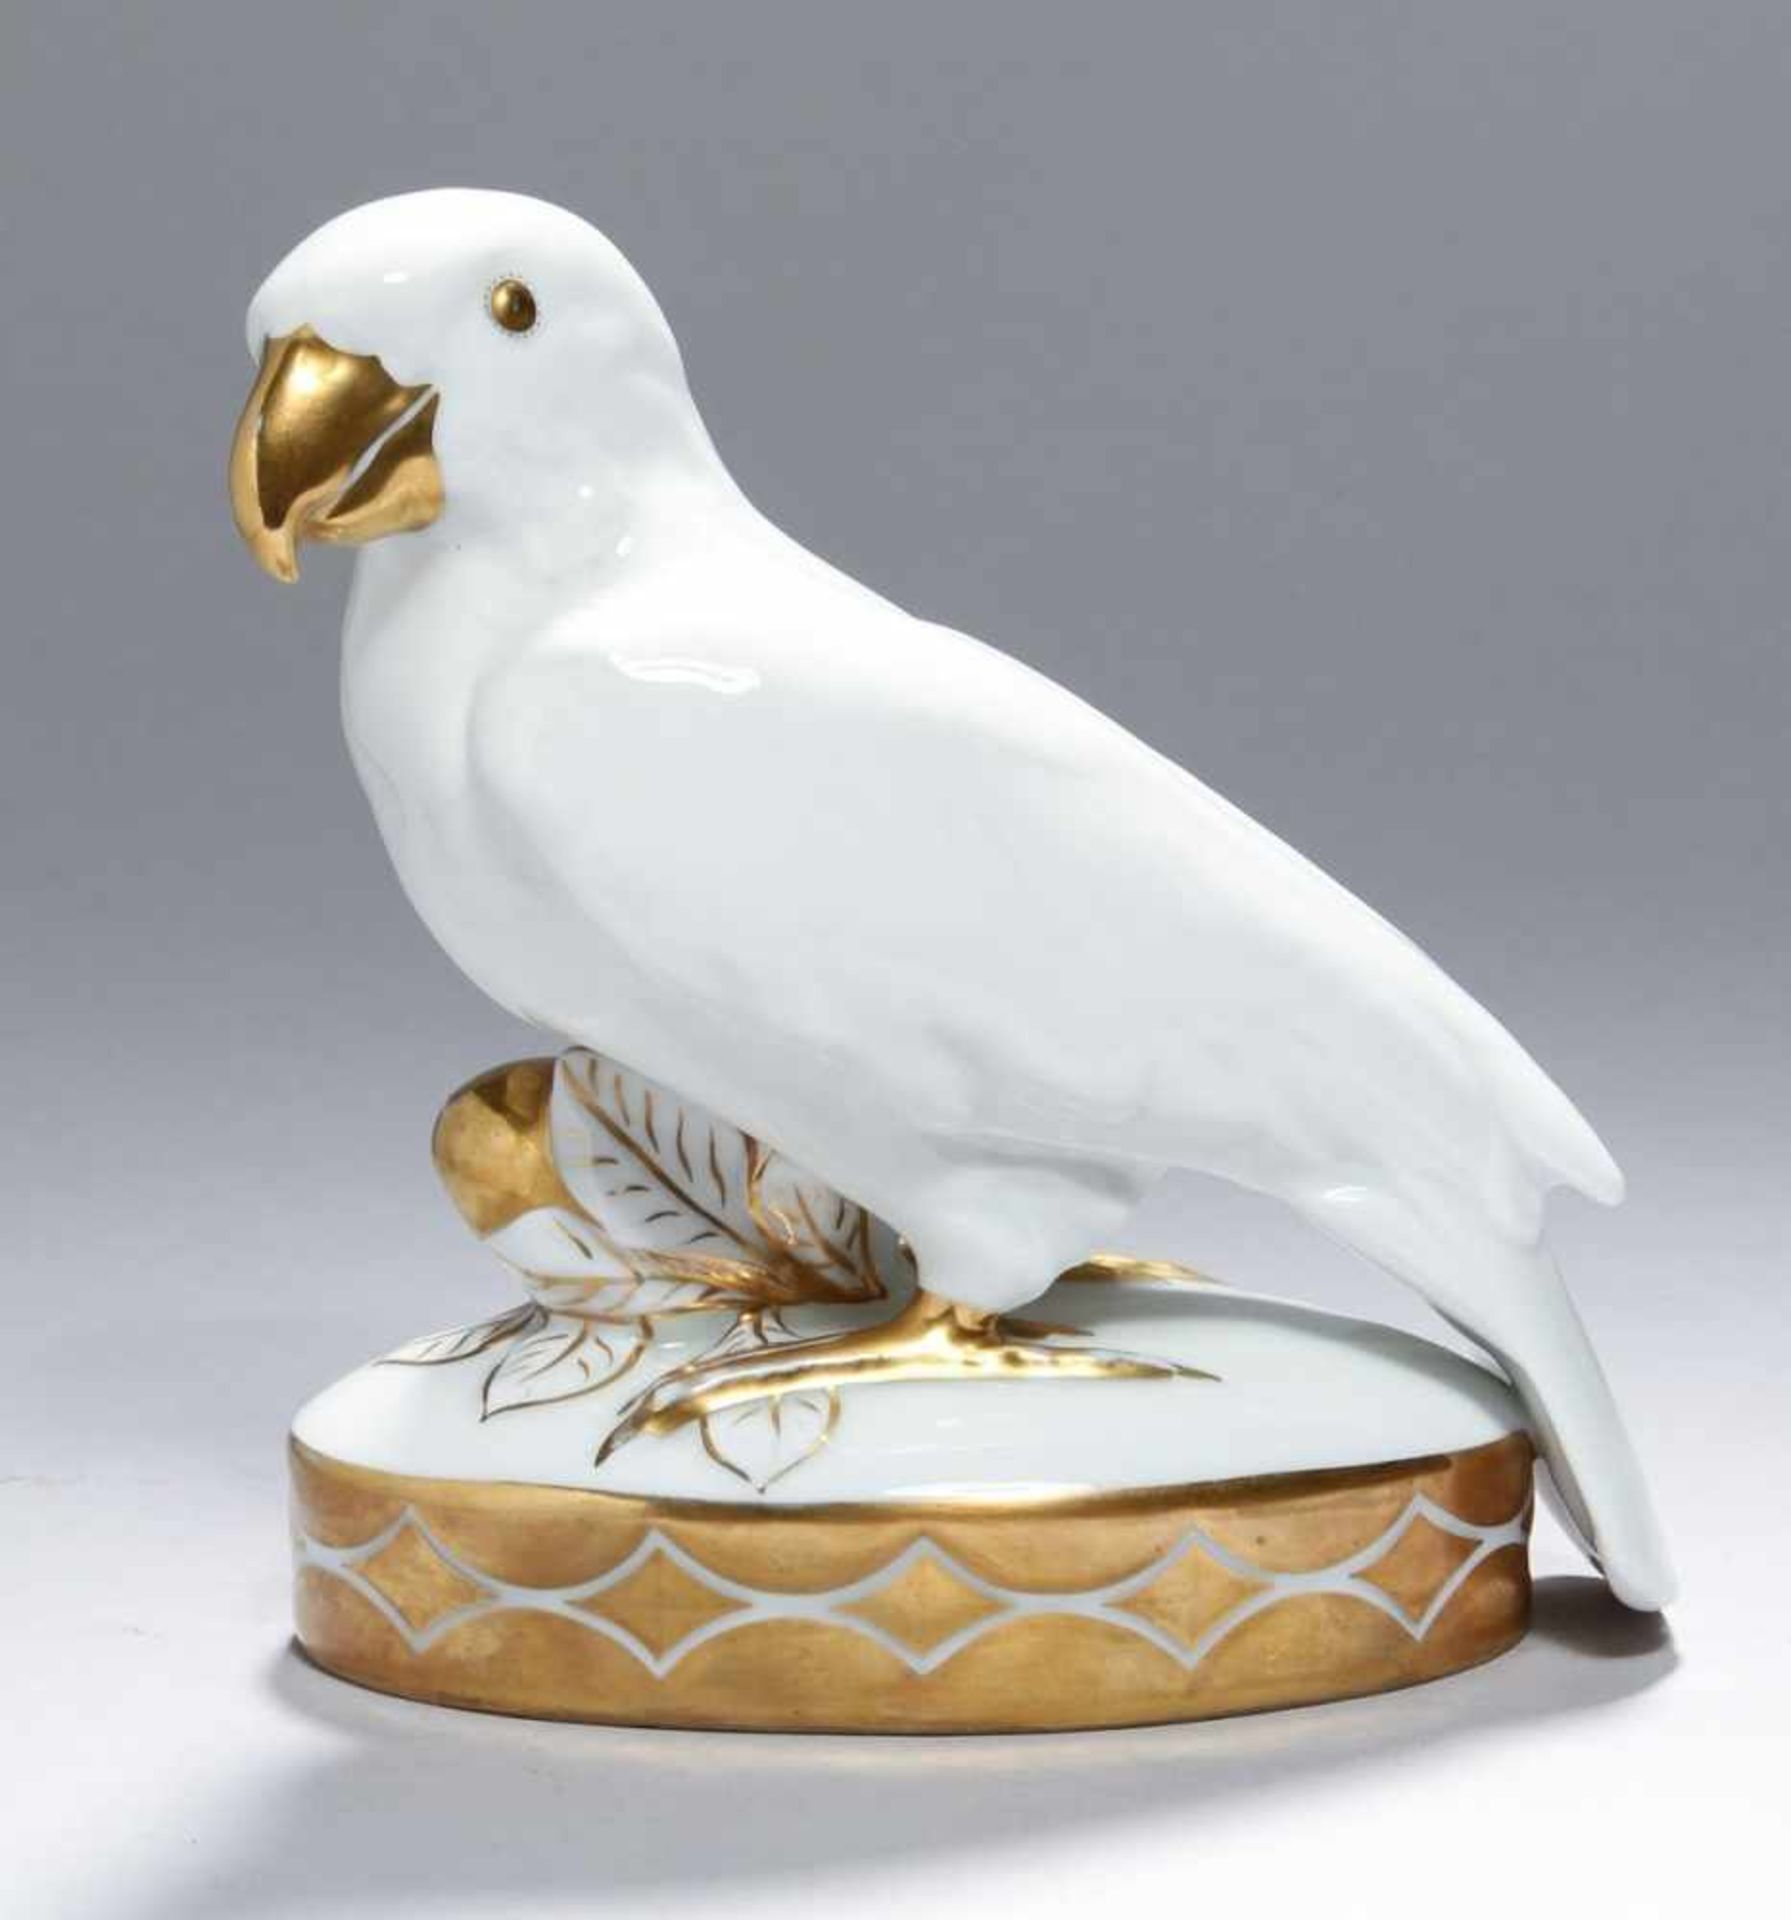 Porzellan-Tierplastik, "Papagei", Lorenz Hutschenreuther, Abteilung für Kunst Selb, um1919-28,